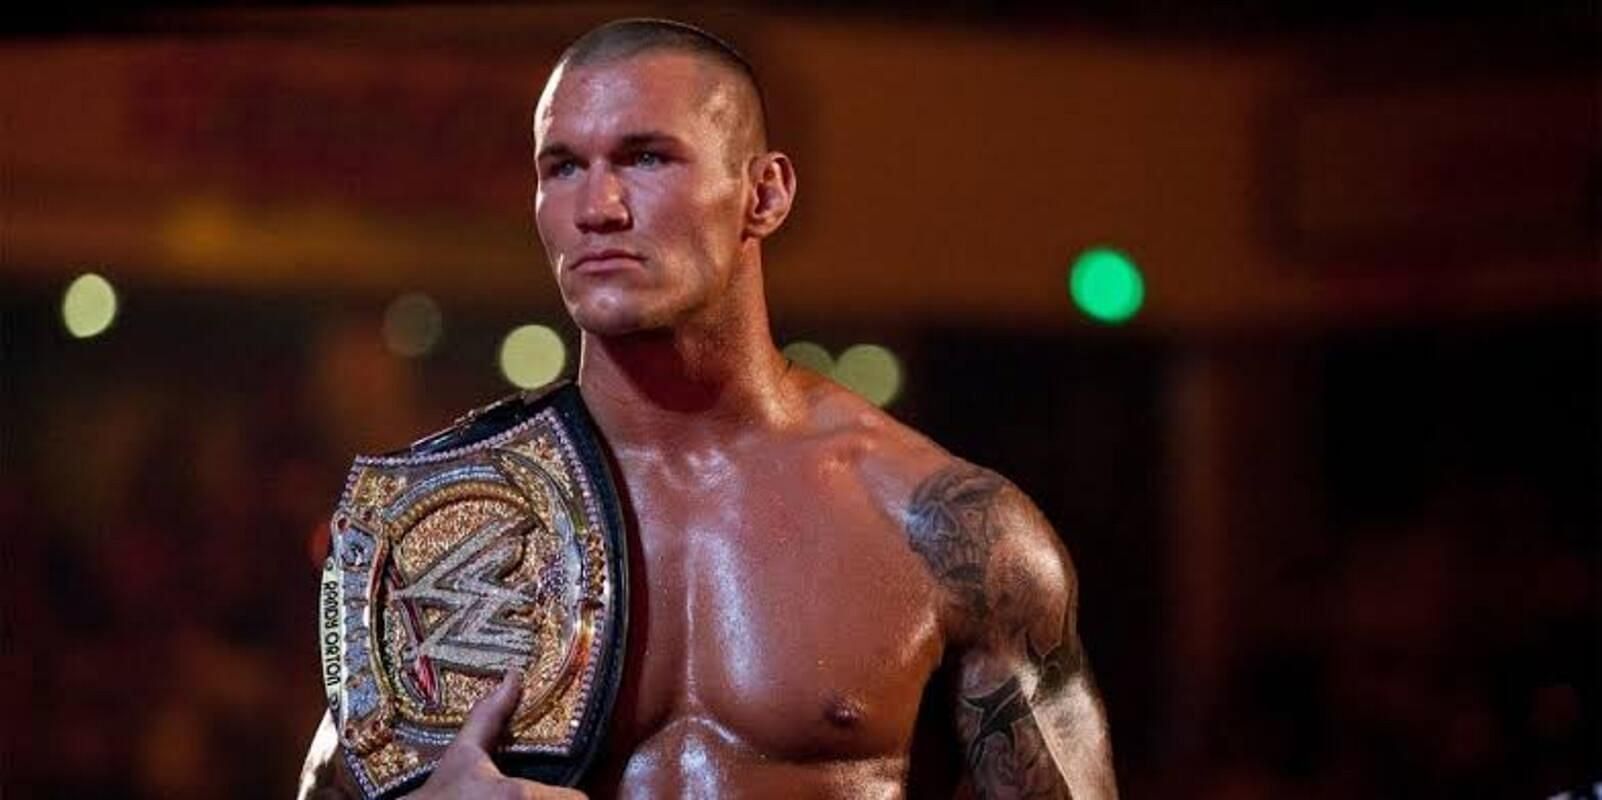 Randy Orton as WWE Champion.